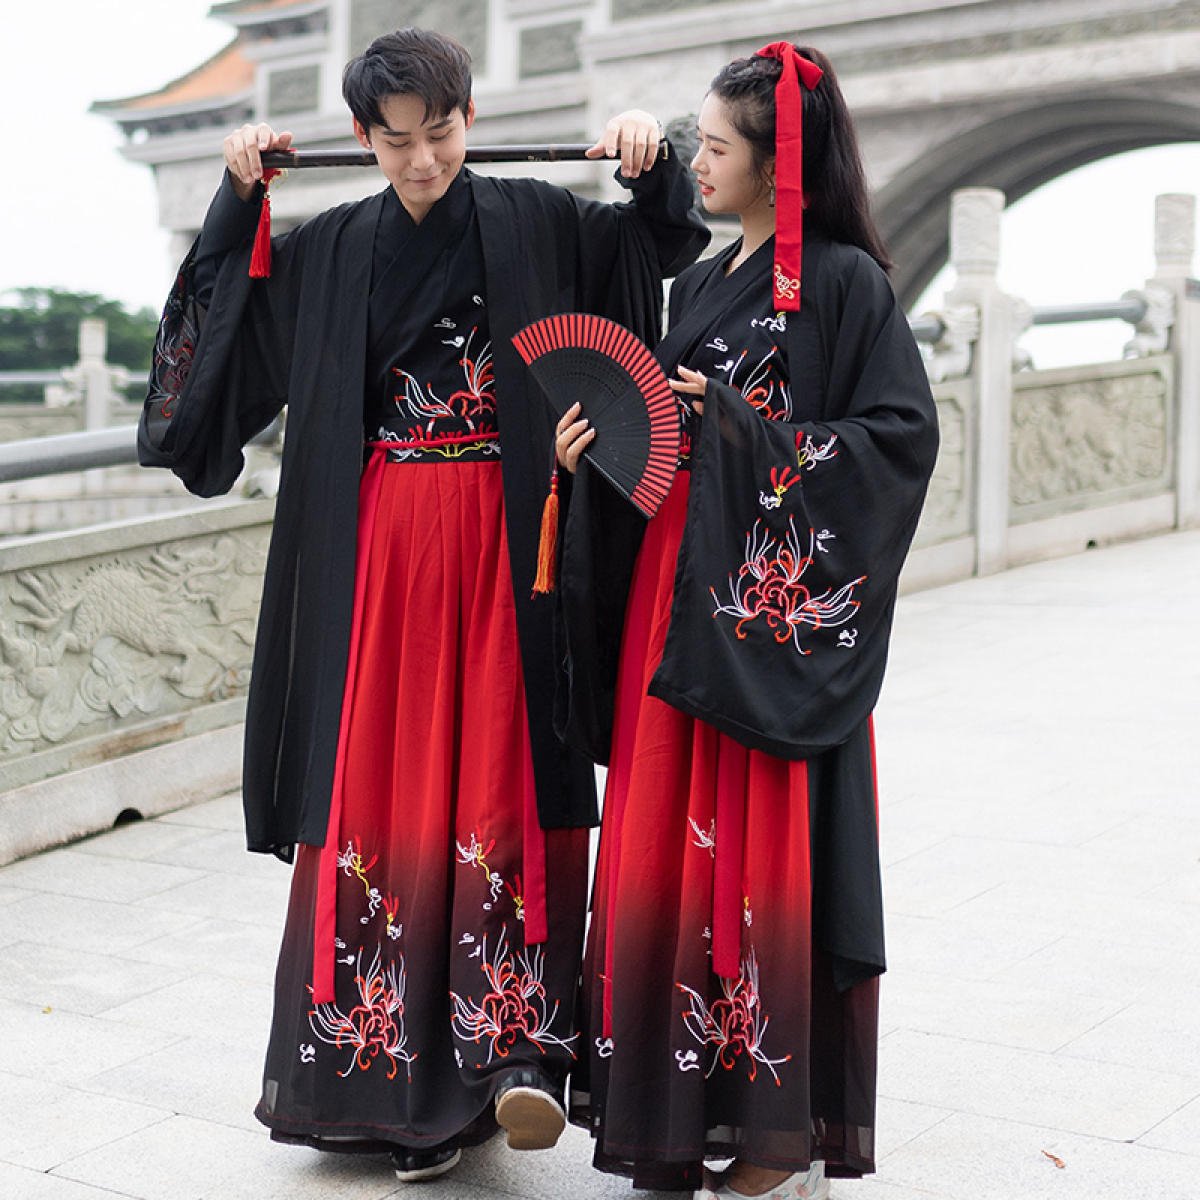 китайский народный костюм фото